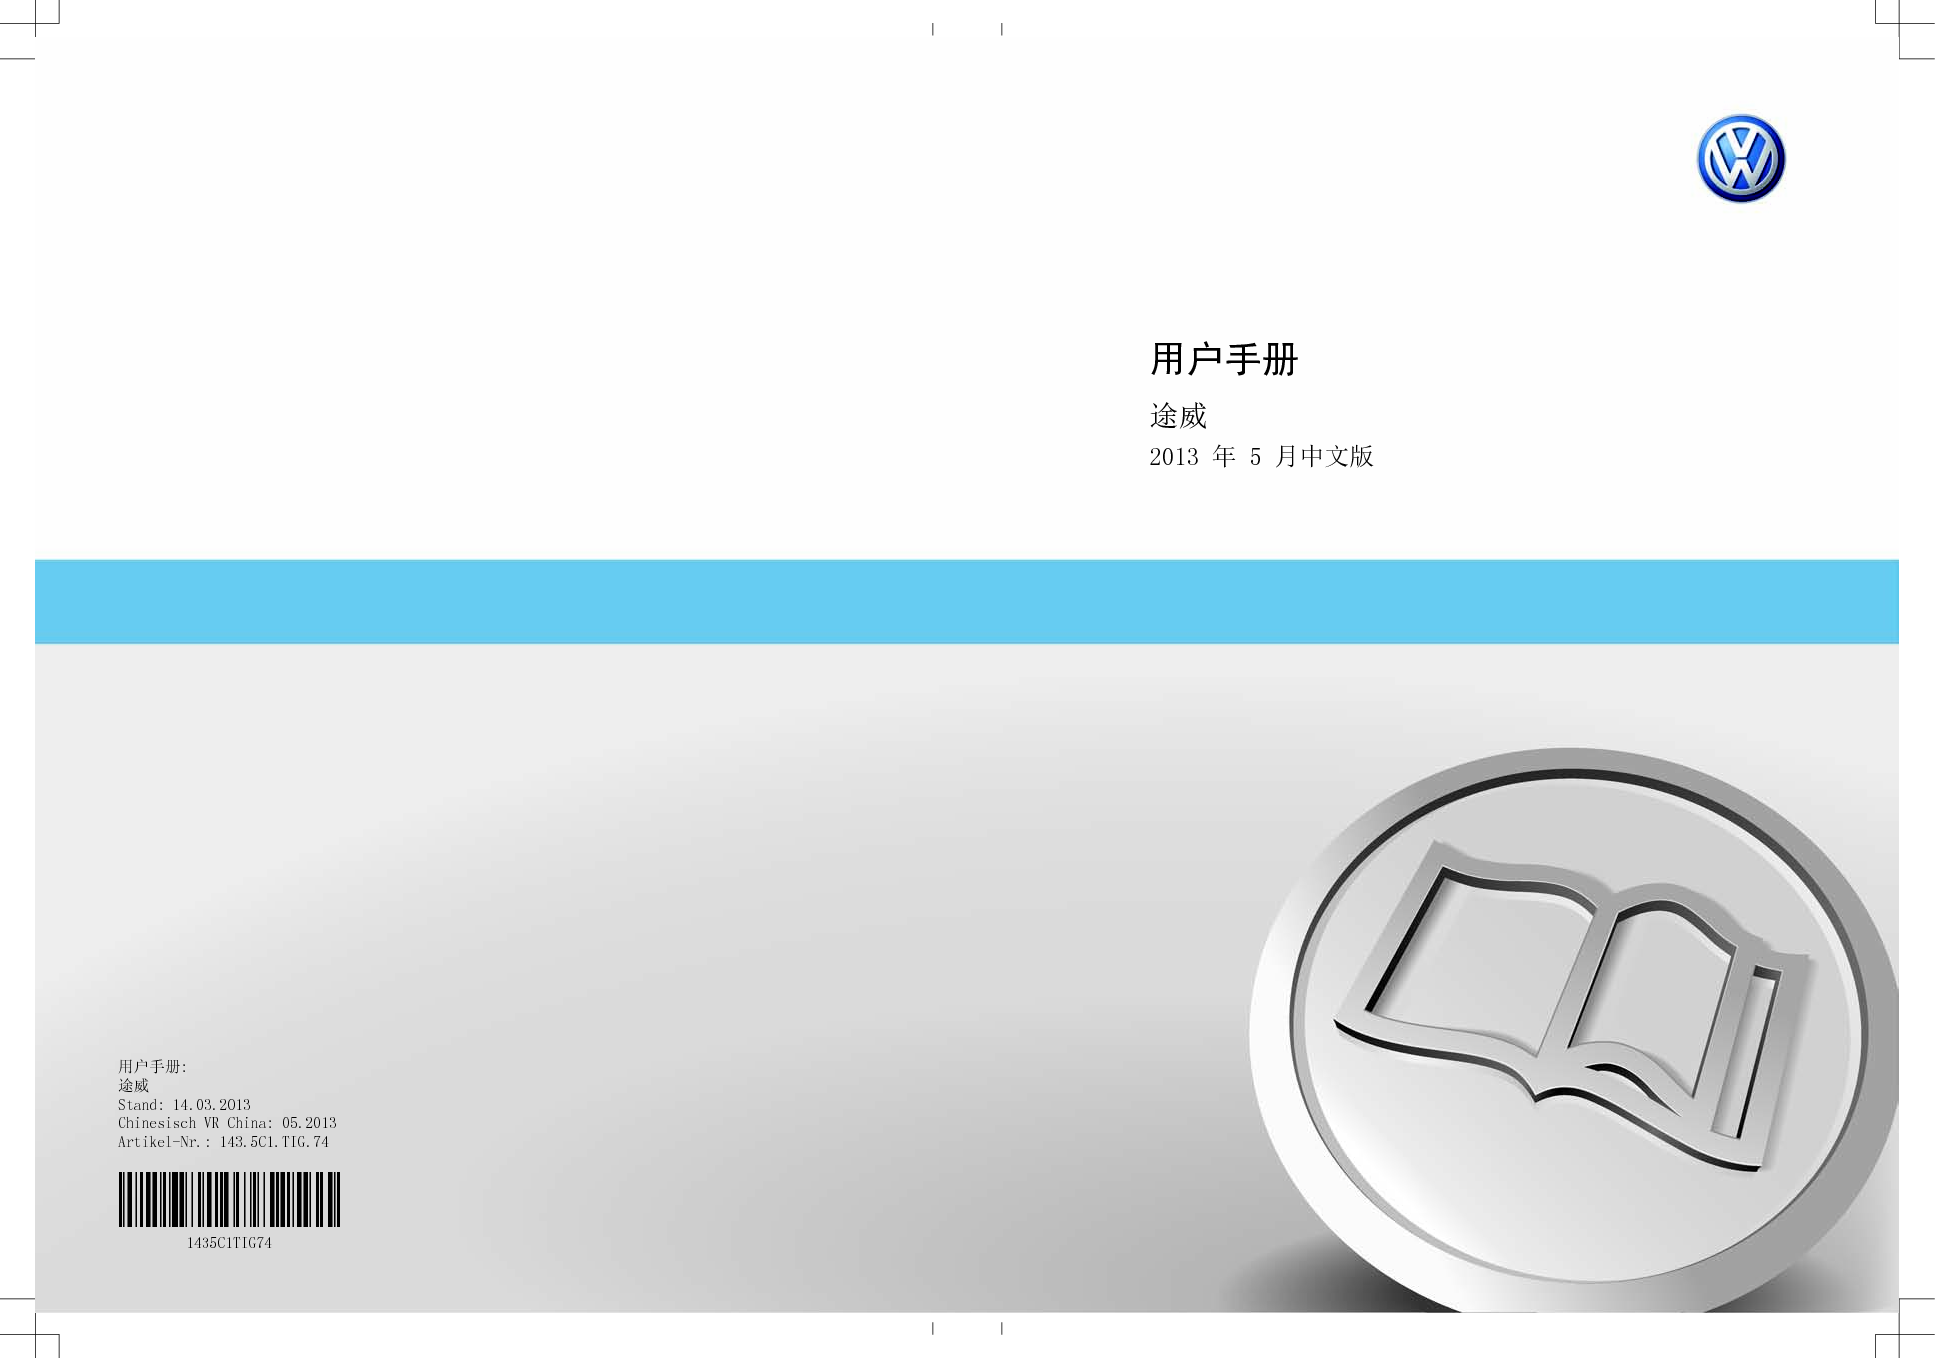 大众 Volkswagen TIGUAN 途威 2013 用户手册 封面